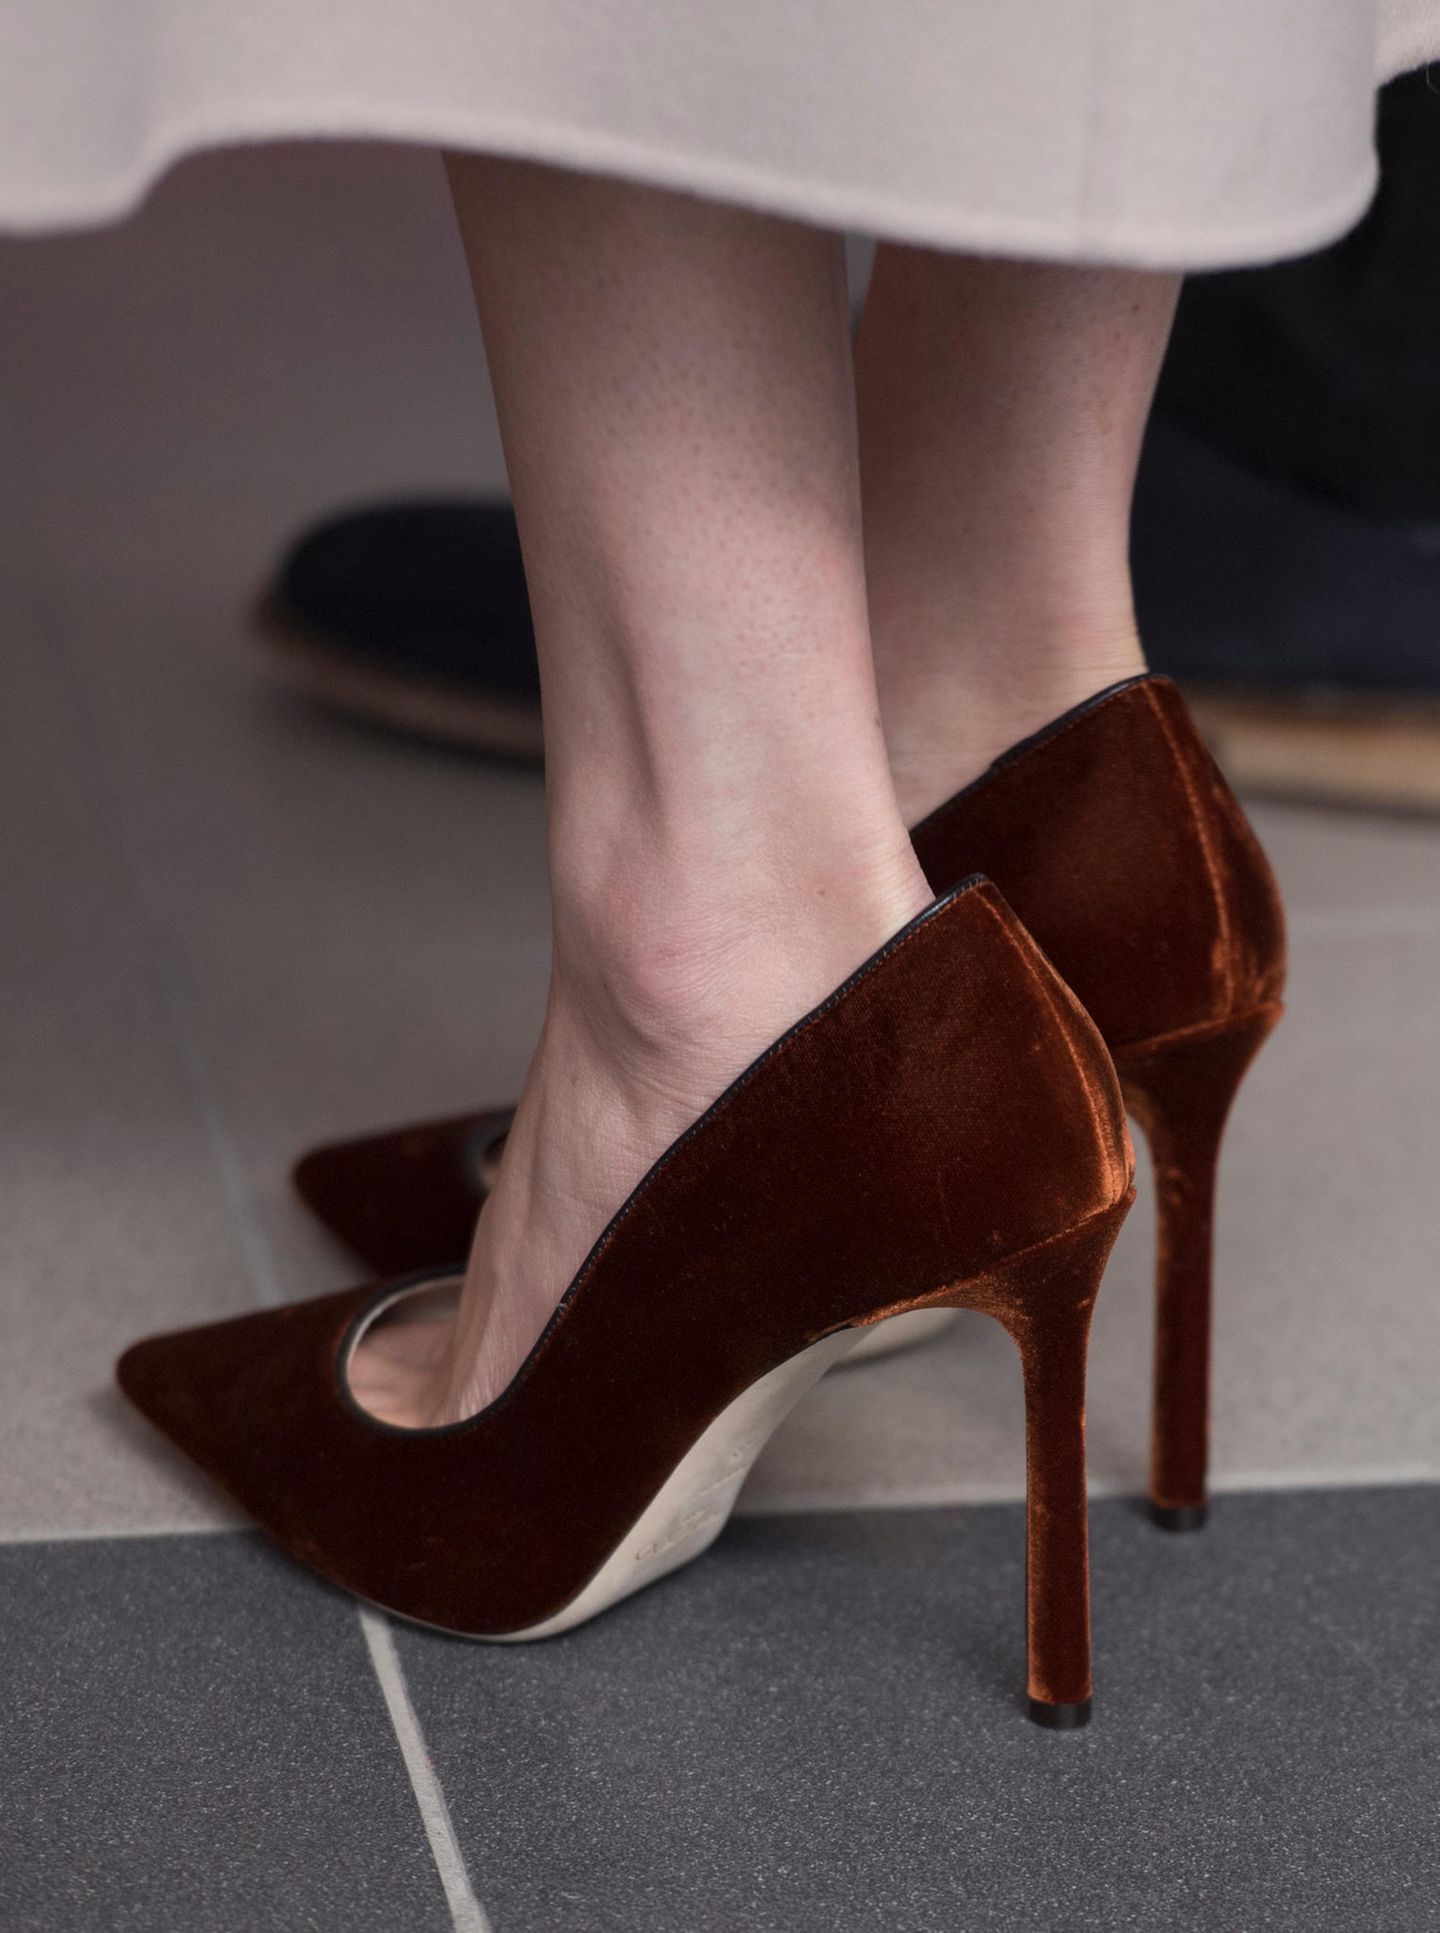 Schuhe der Royals: Schuhe von Meghan Markle im Detail